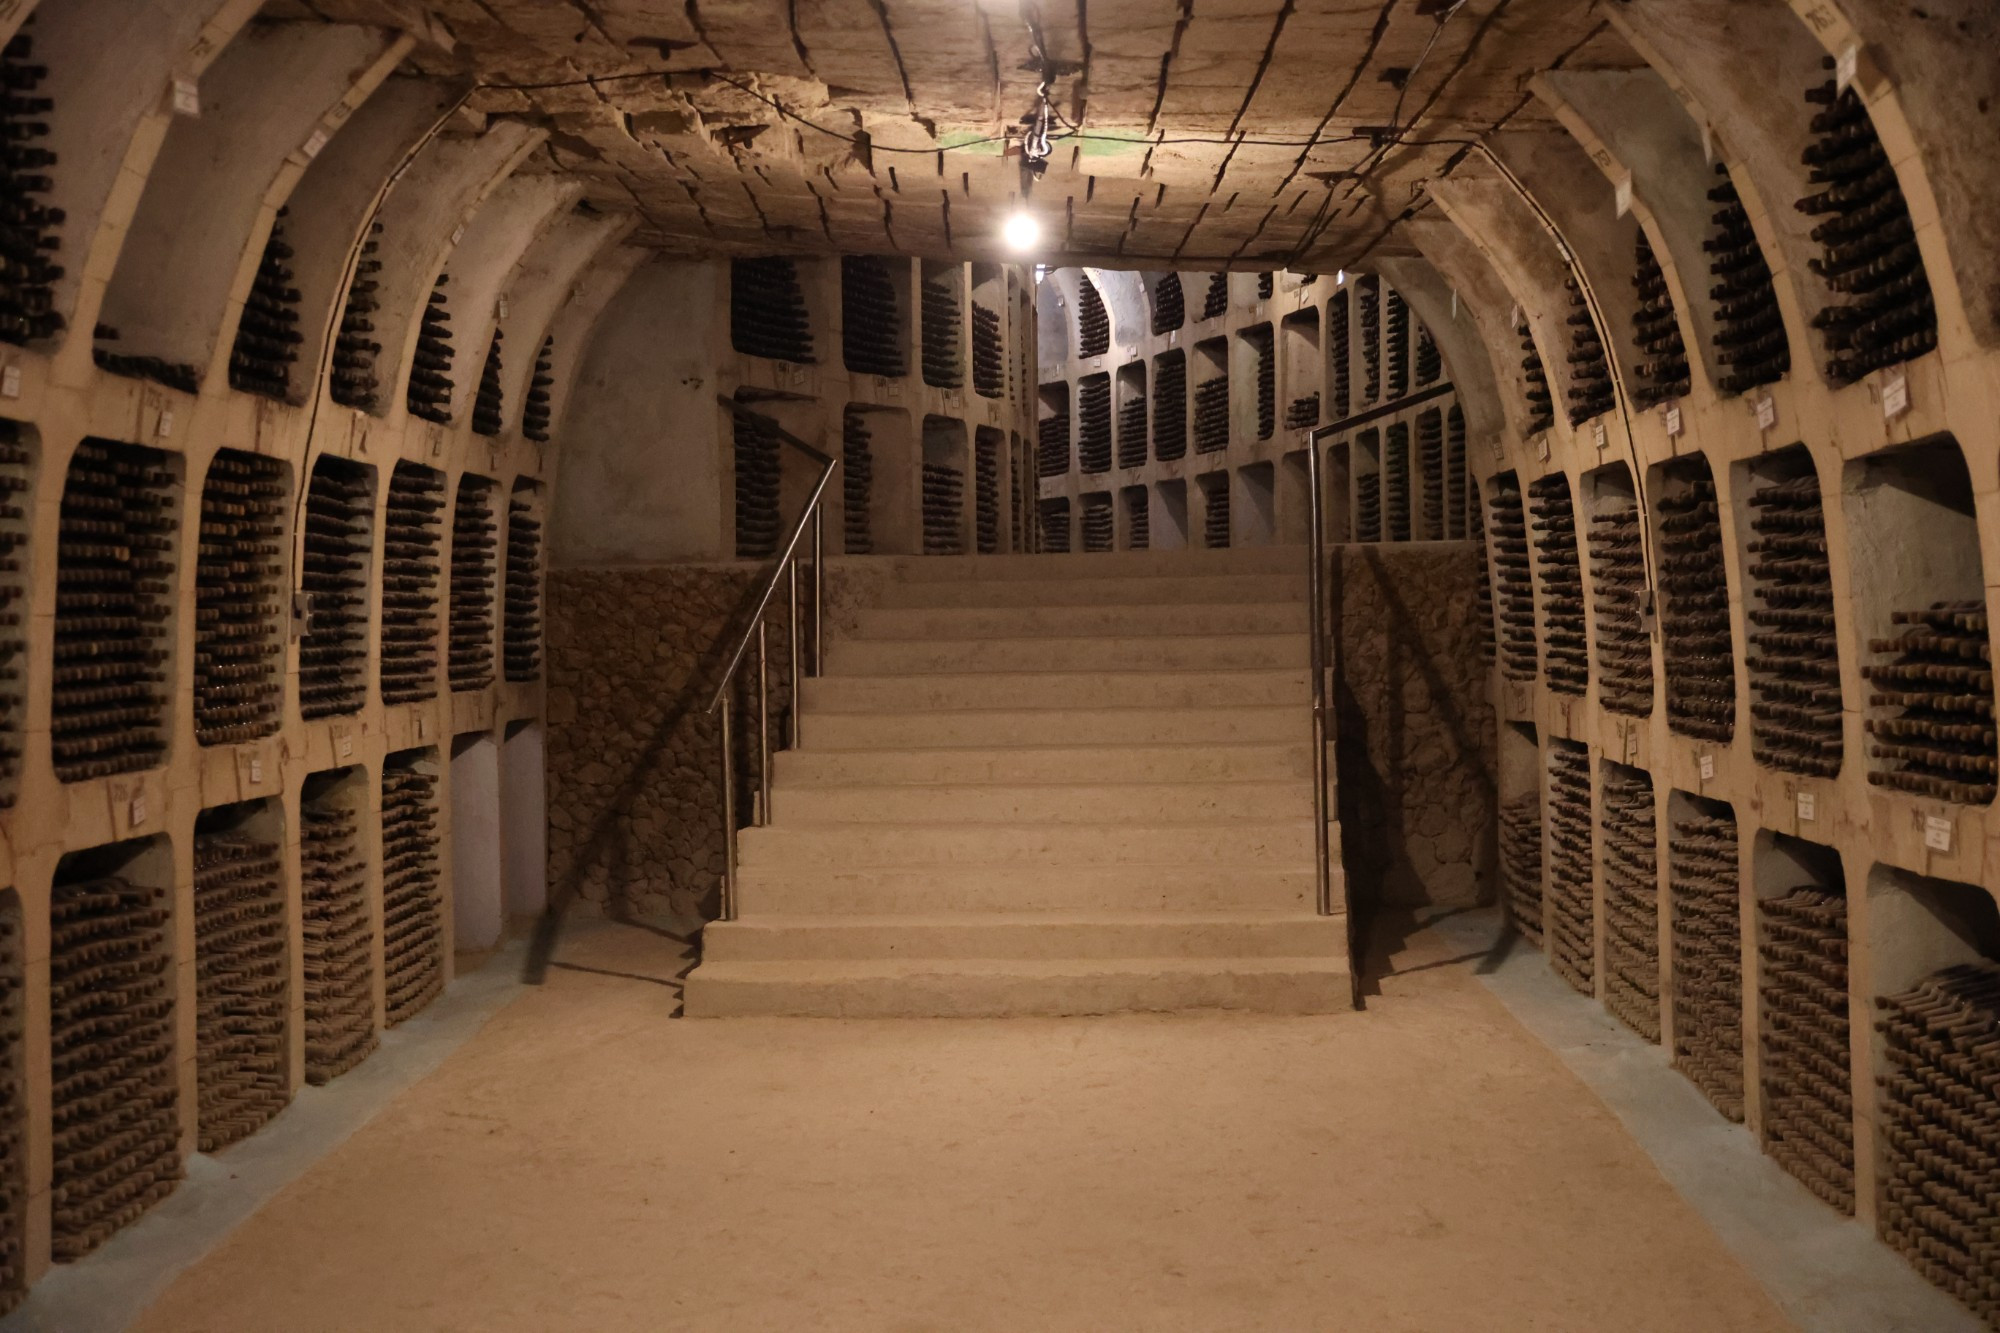 Underground Cellars from Milestii Micii, Moldova